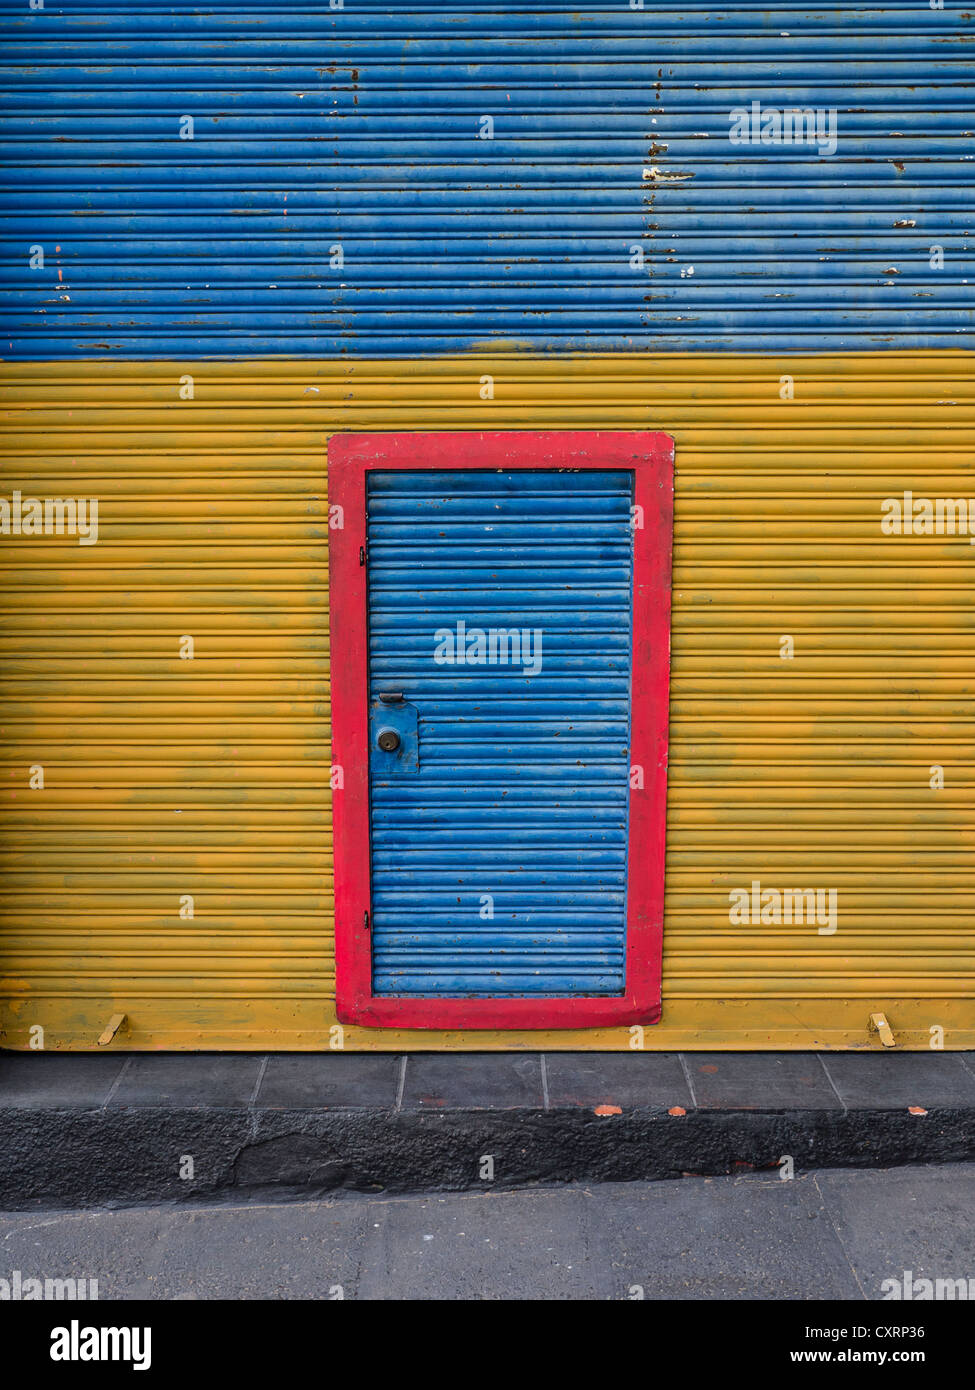 Un mur en carton ondulé peint de couleurs vives, d'un bâtiment en métal avec une porte en métal ondulé avec bordure rouge au centre du mur. Banque D'Images